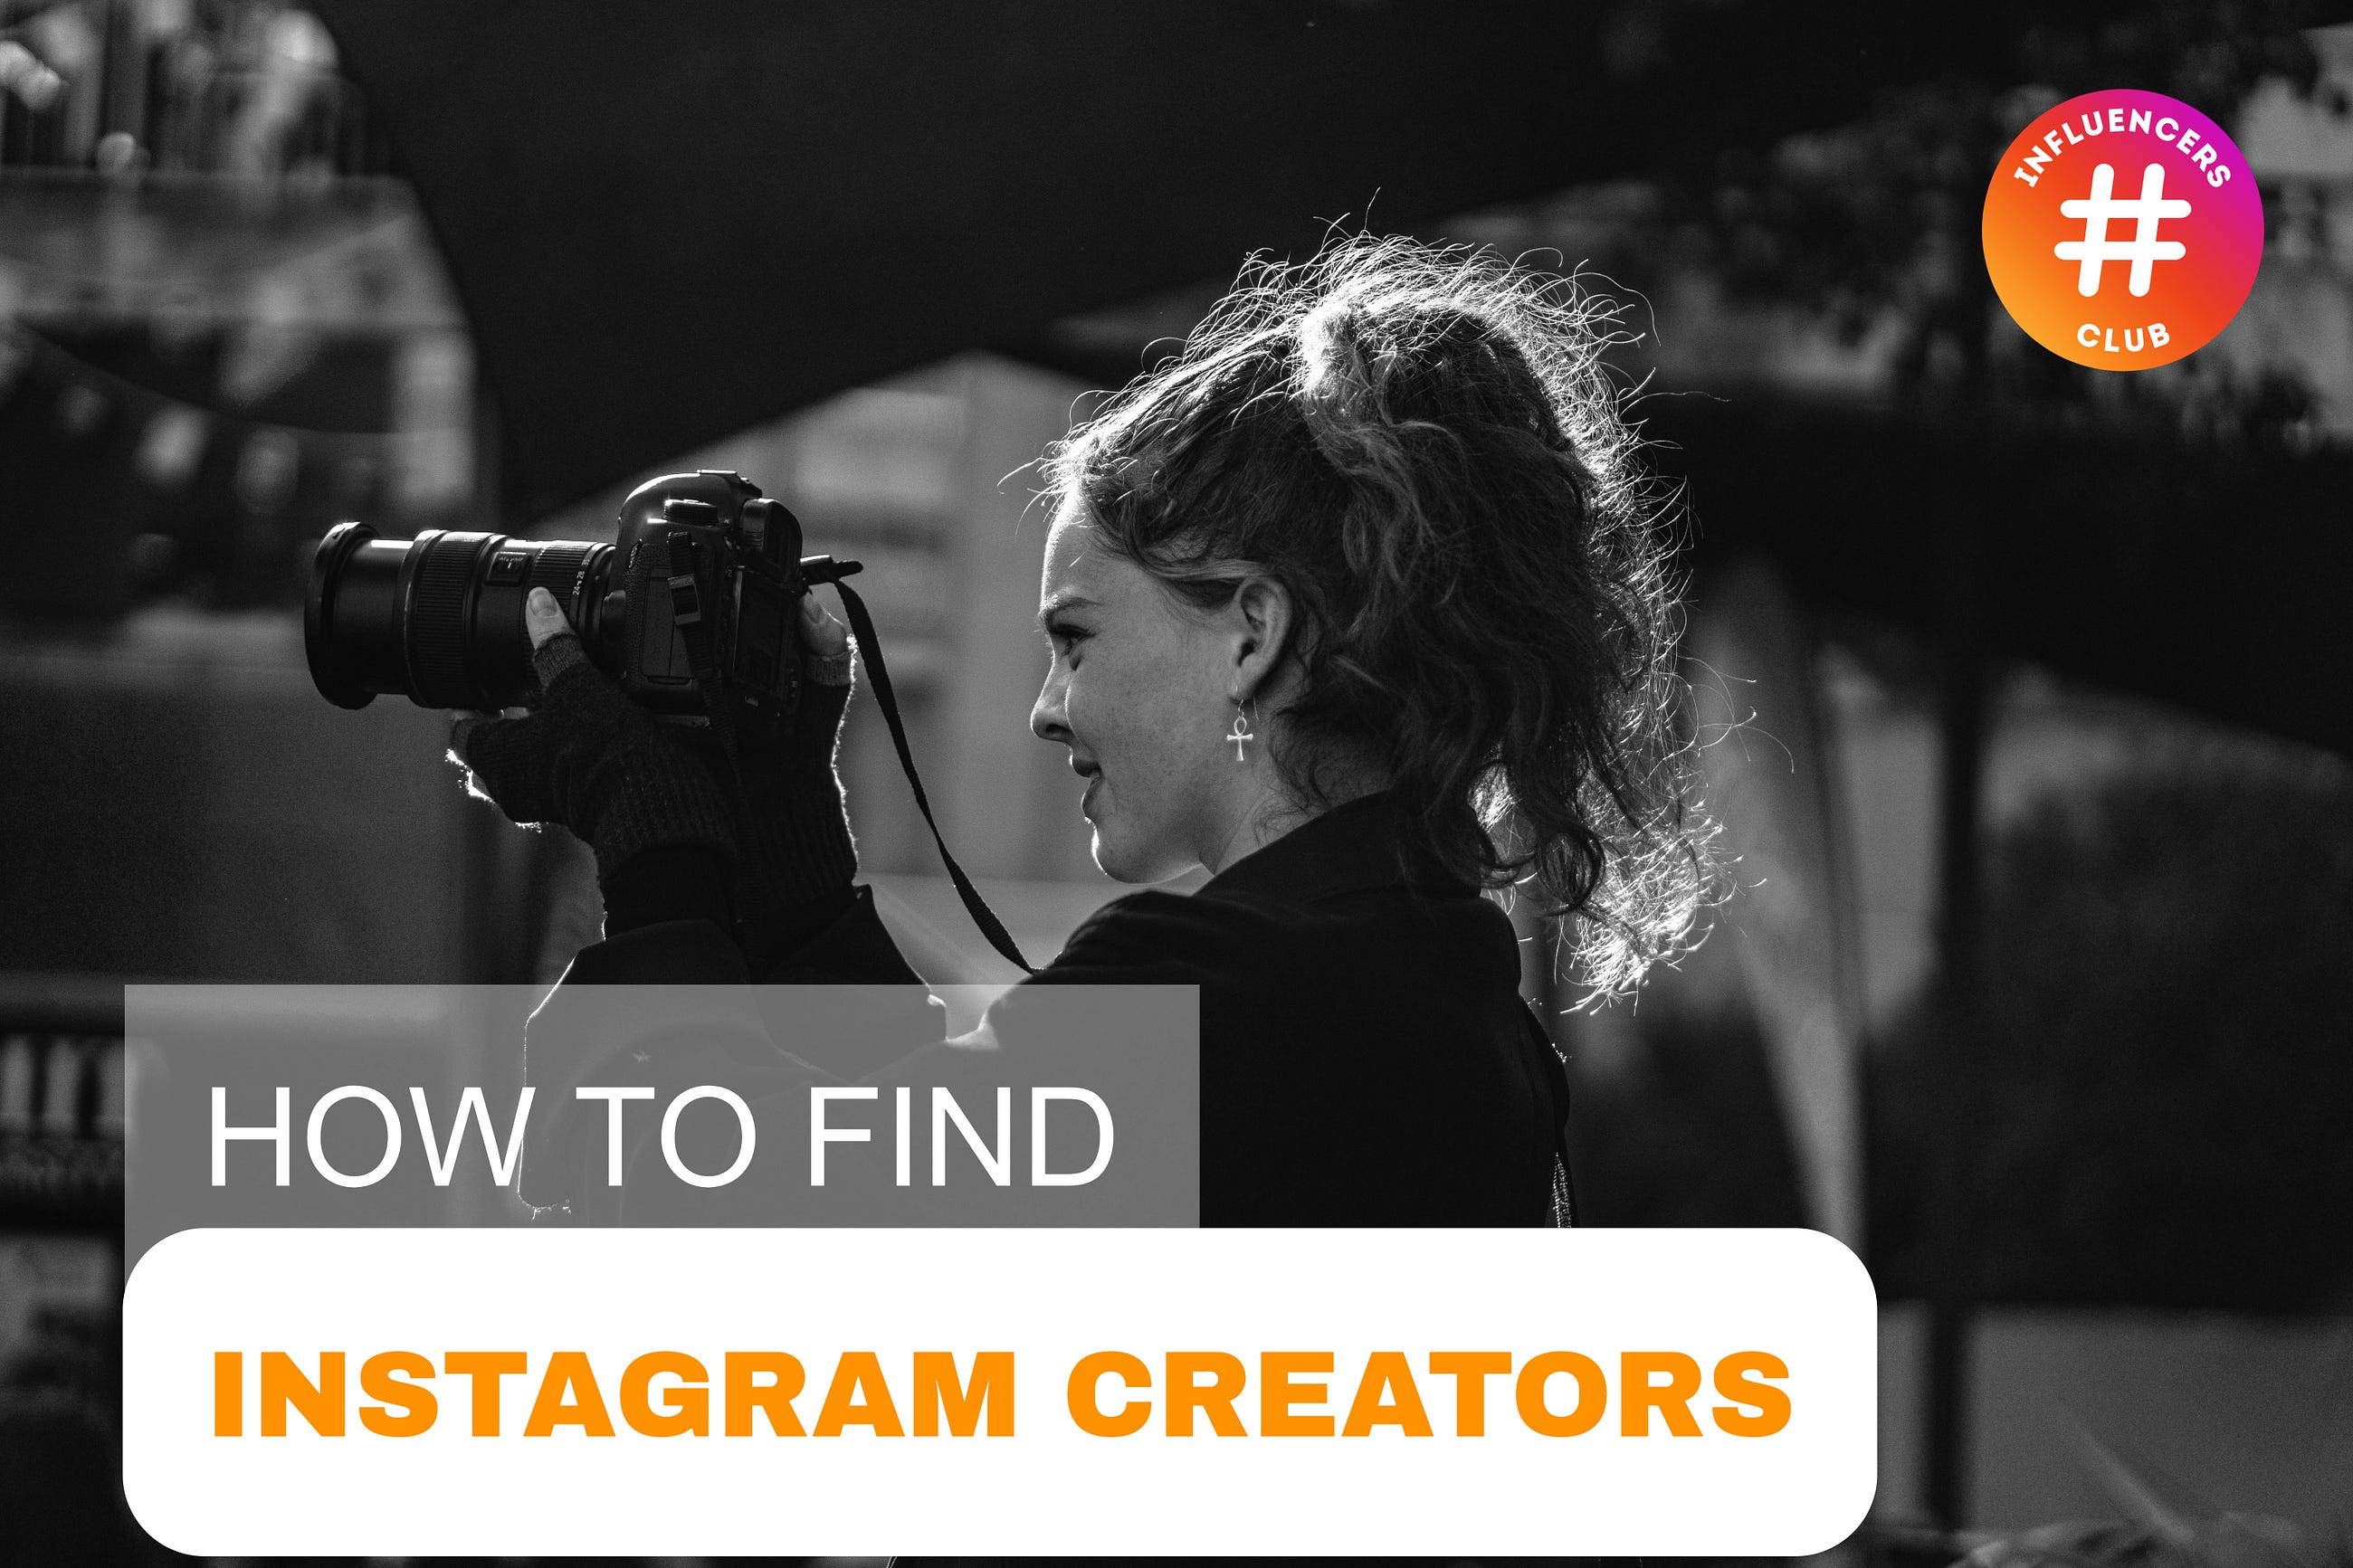 How to Find Instagram Creators